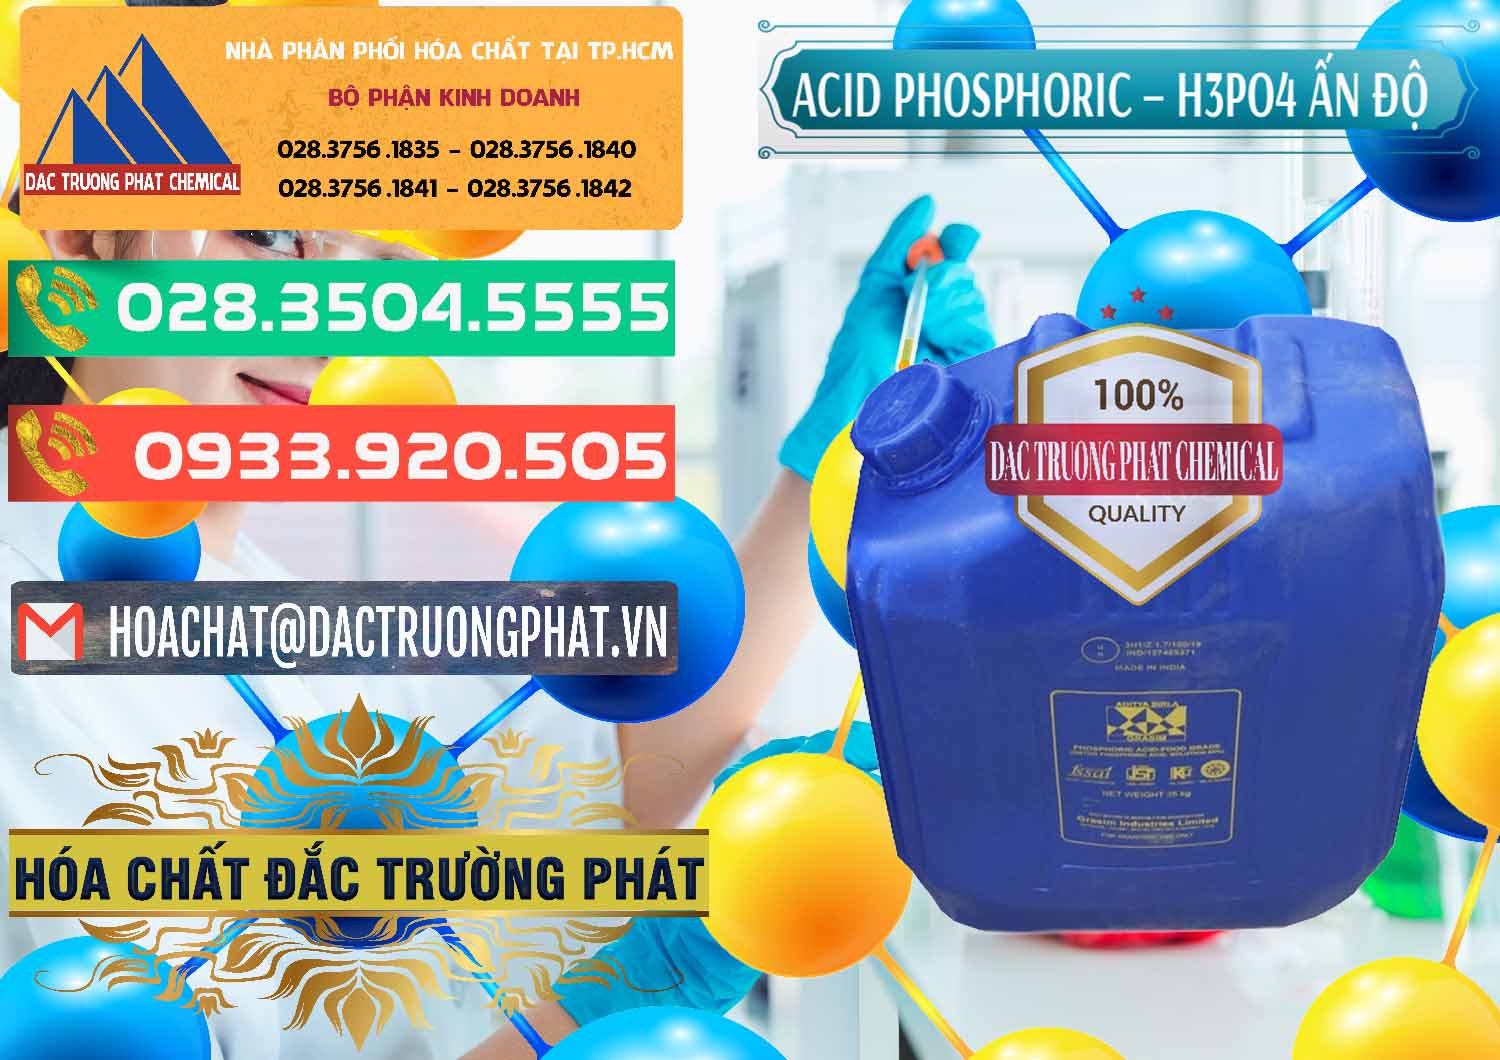 Nơi chuyên cung ứng - bán Axit Phosphoric H3PO4 85% Ấn Độ - 0350 - Công ty chuyên cung cấp - bán hóa chất tại TP.HCM - congtyhoachat.com.vn